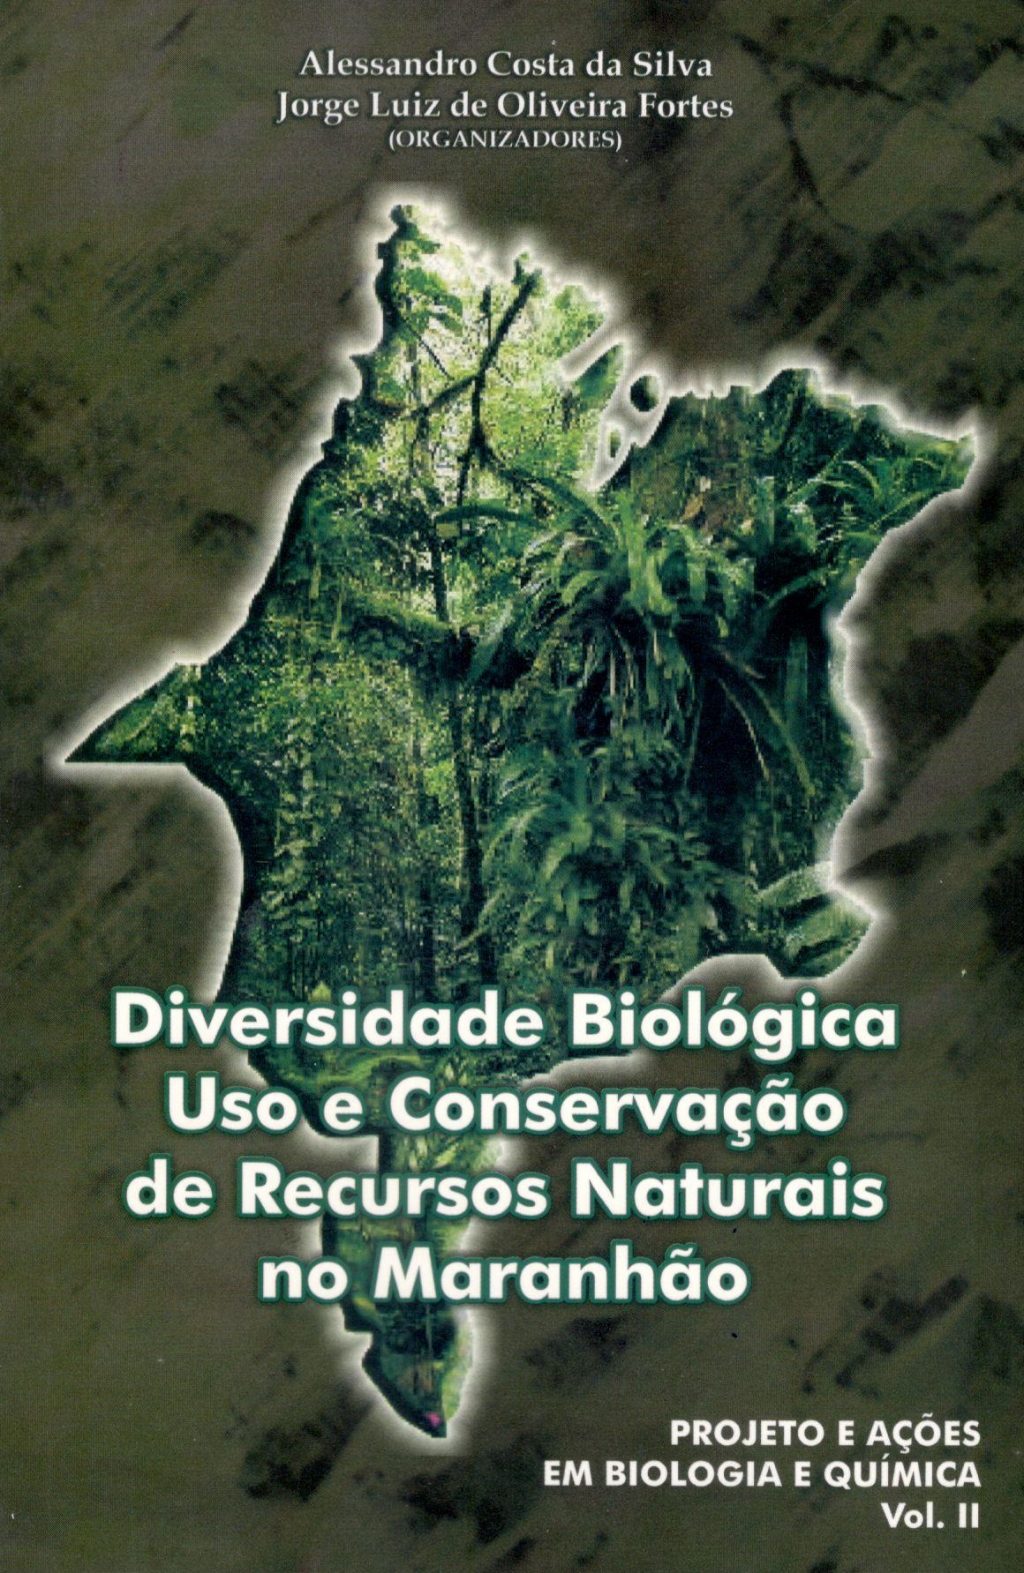 Diversidade Biológica, Uso e conservação de Recursos Naturais no Maranhão (ESGOTADO)